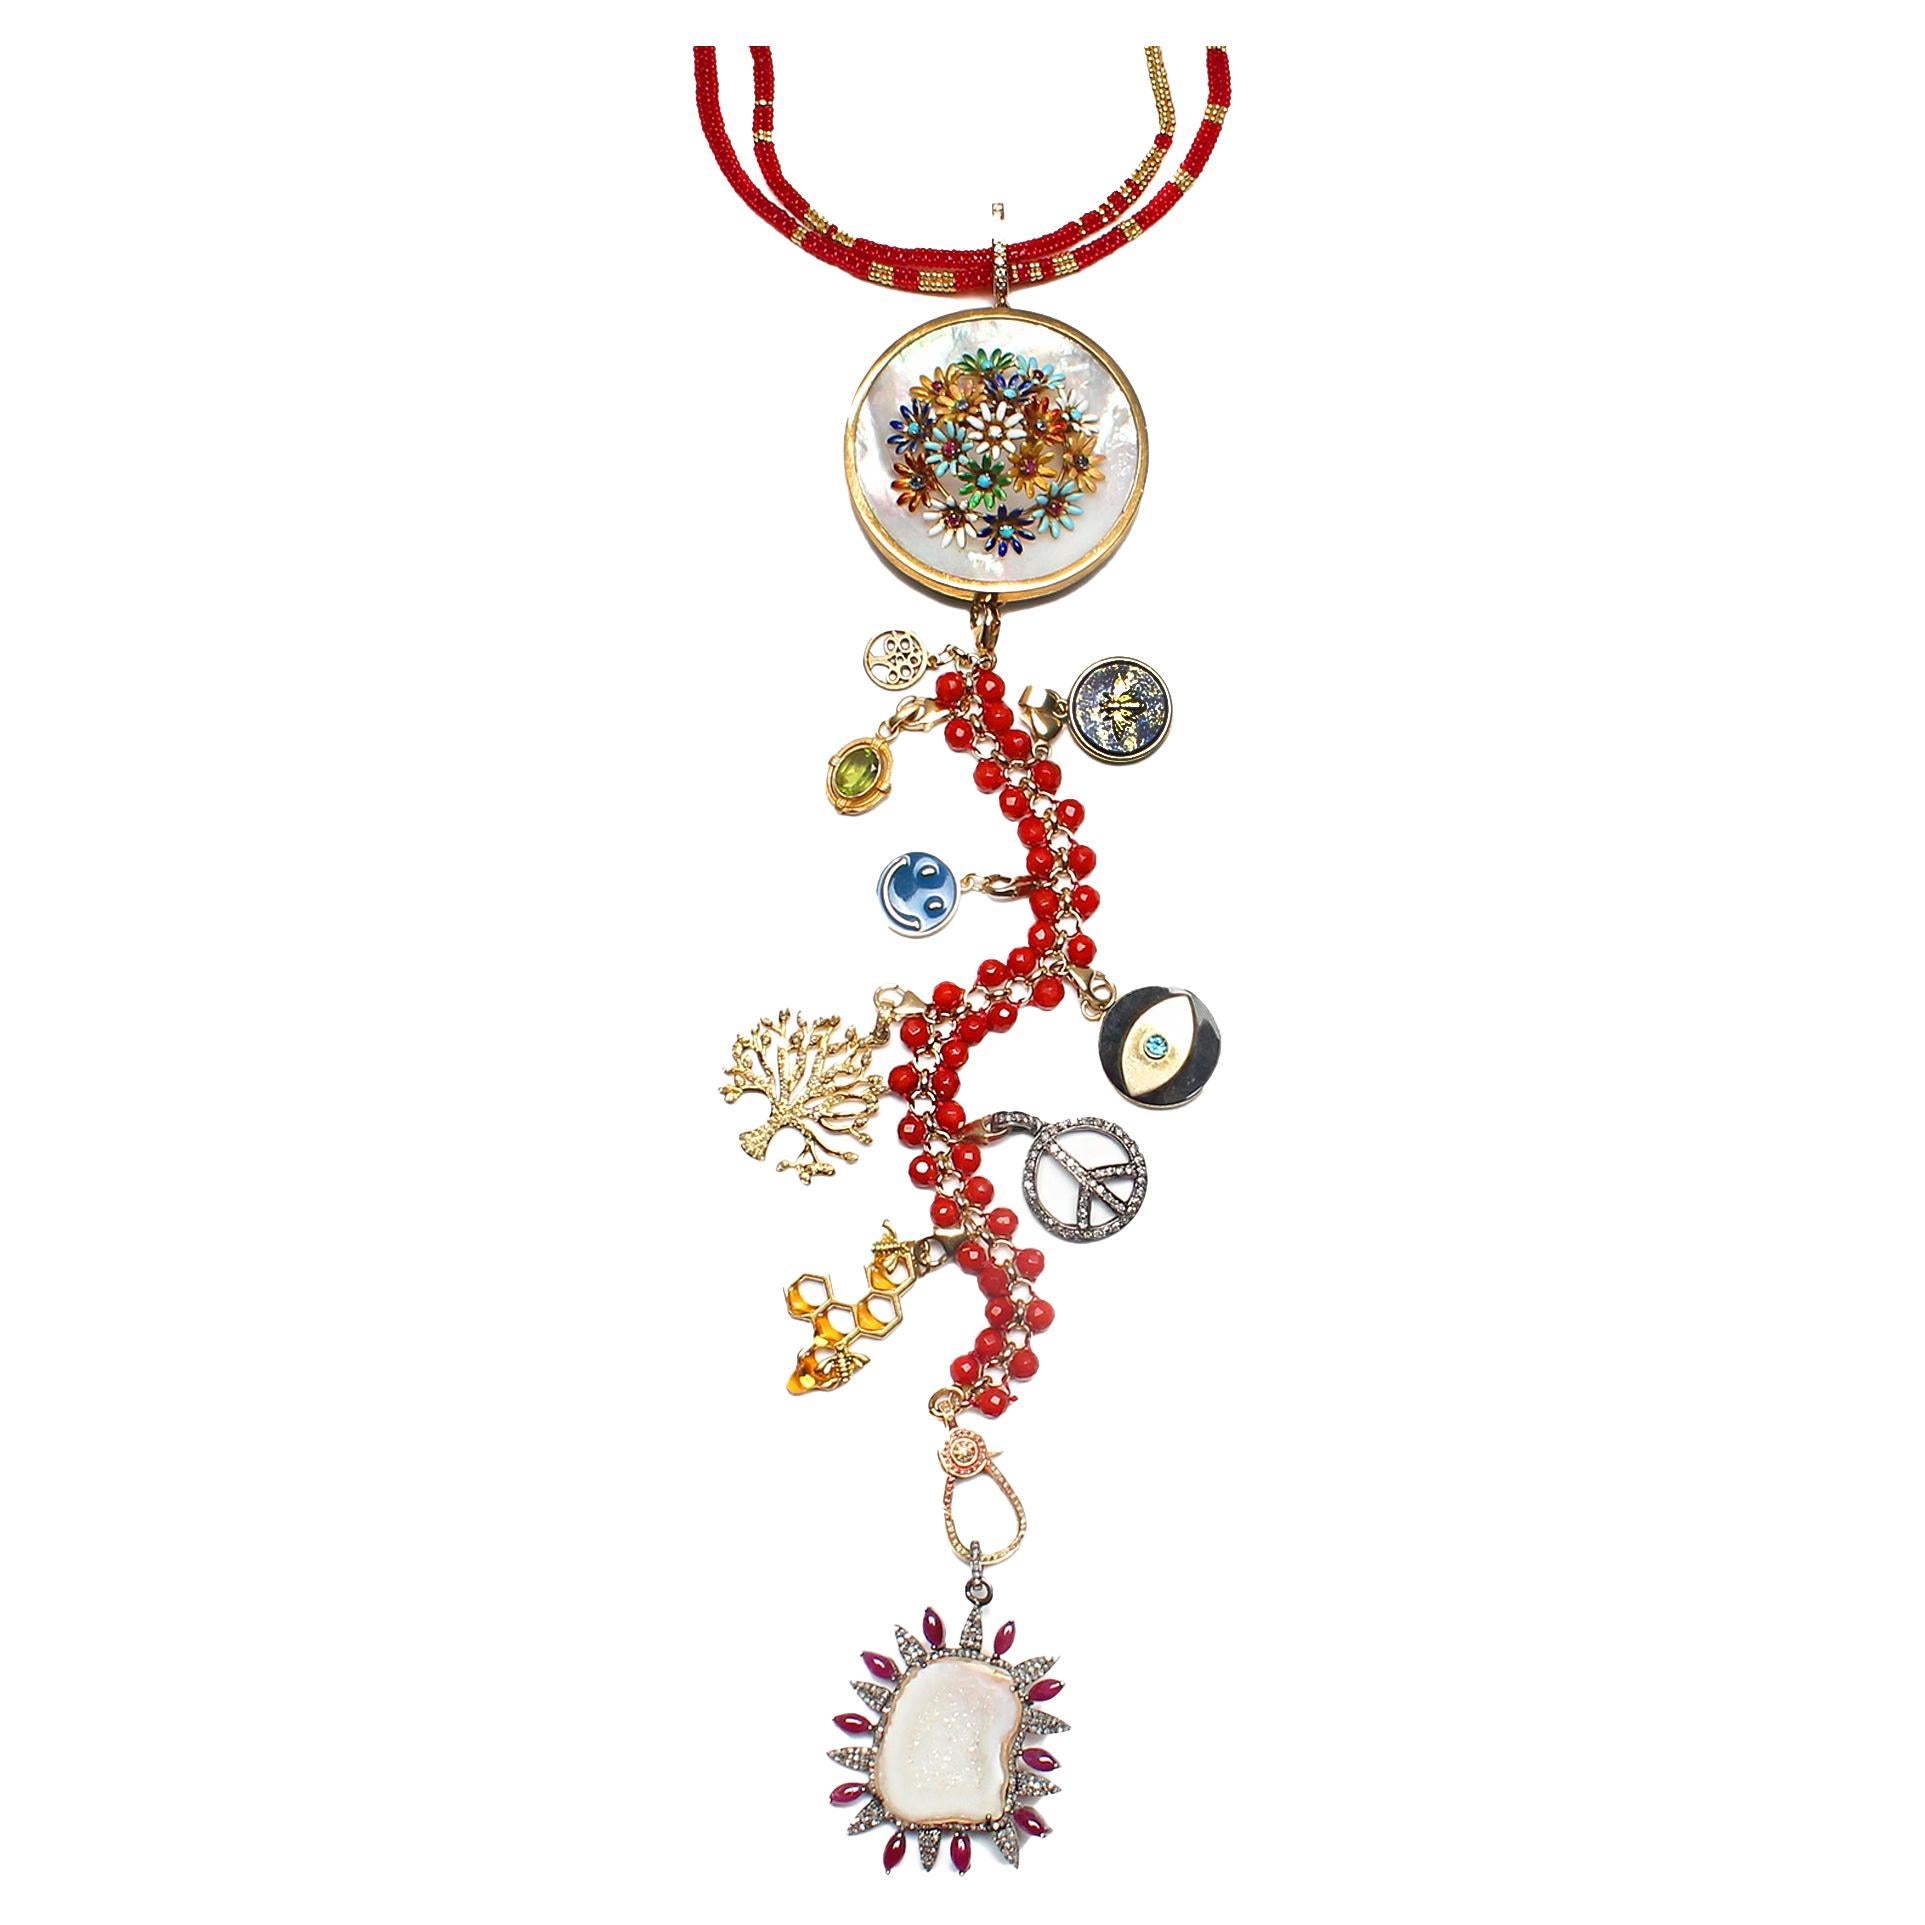 CLARISSA BRONFMAN "Crimson Everglades" Rubin-Diamant-Gold-Halskette mit Baumsymbol